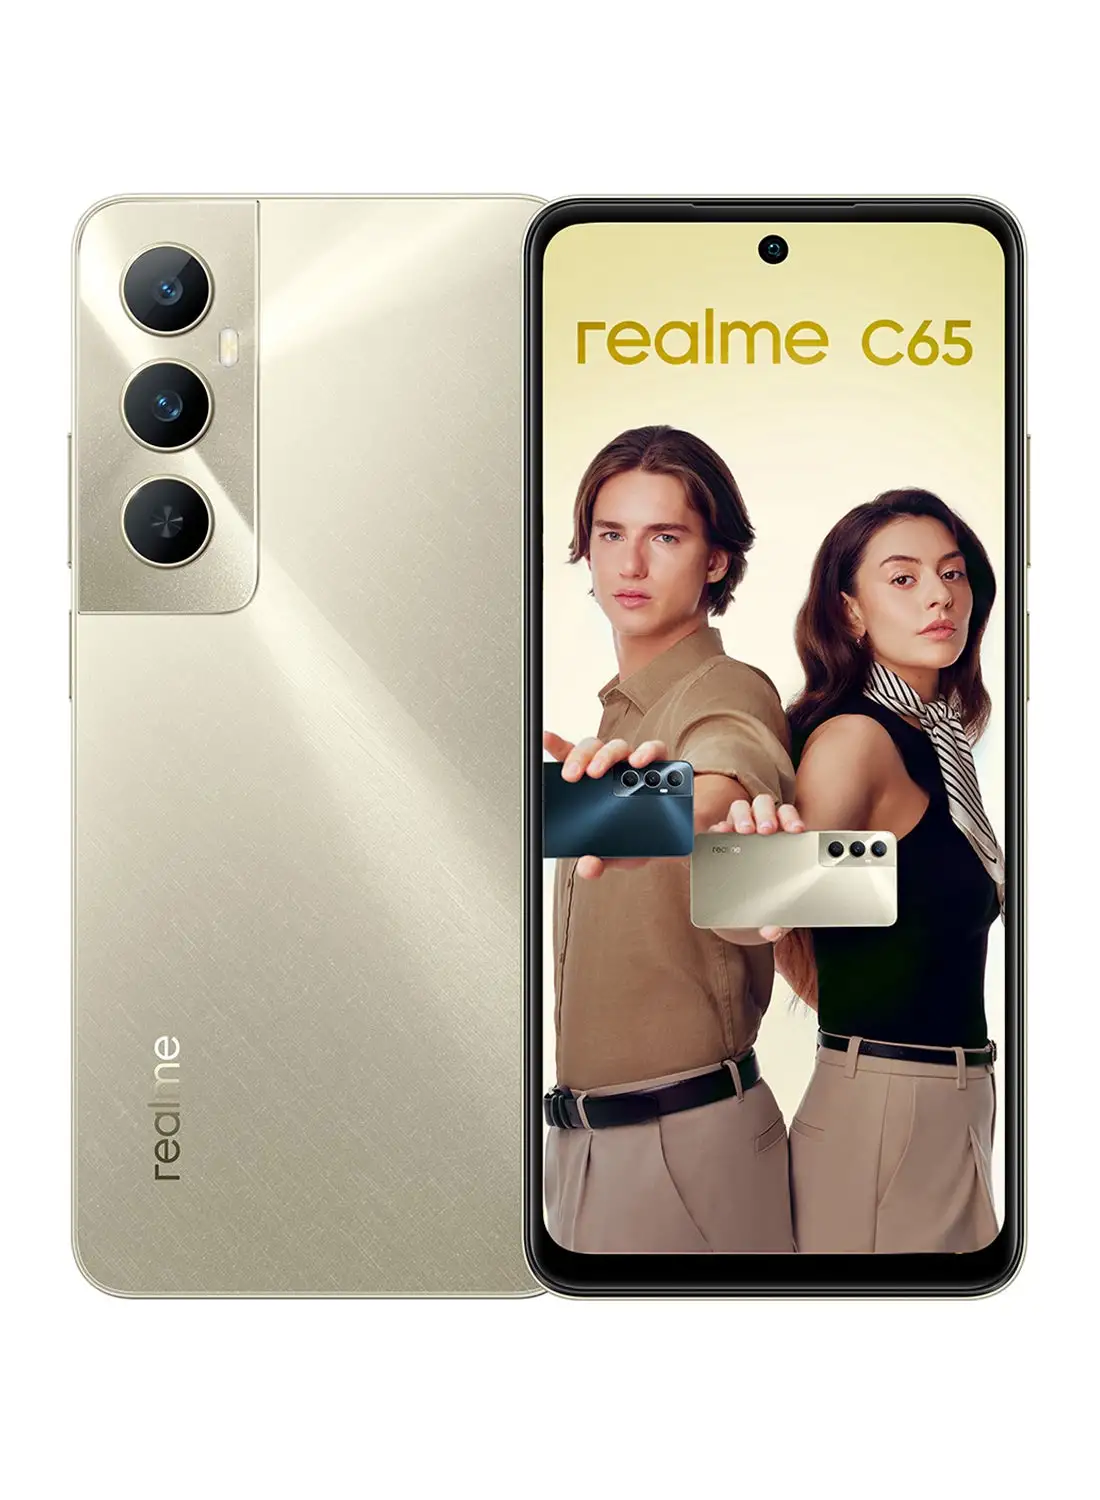 هاتف Realme C65 ثنائي الشريحة بلون ذهبي ستارلايت وذاكرة وصول عشوائي (RAM) سعة 8 جيجابايت وذاكرة داخلية 256 جيجابايت يدعم تقنية 4G - إصدار الشرق الأوسط